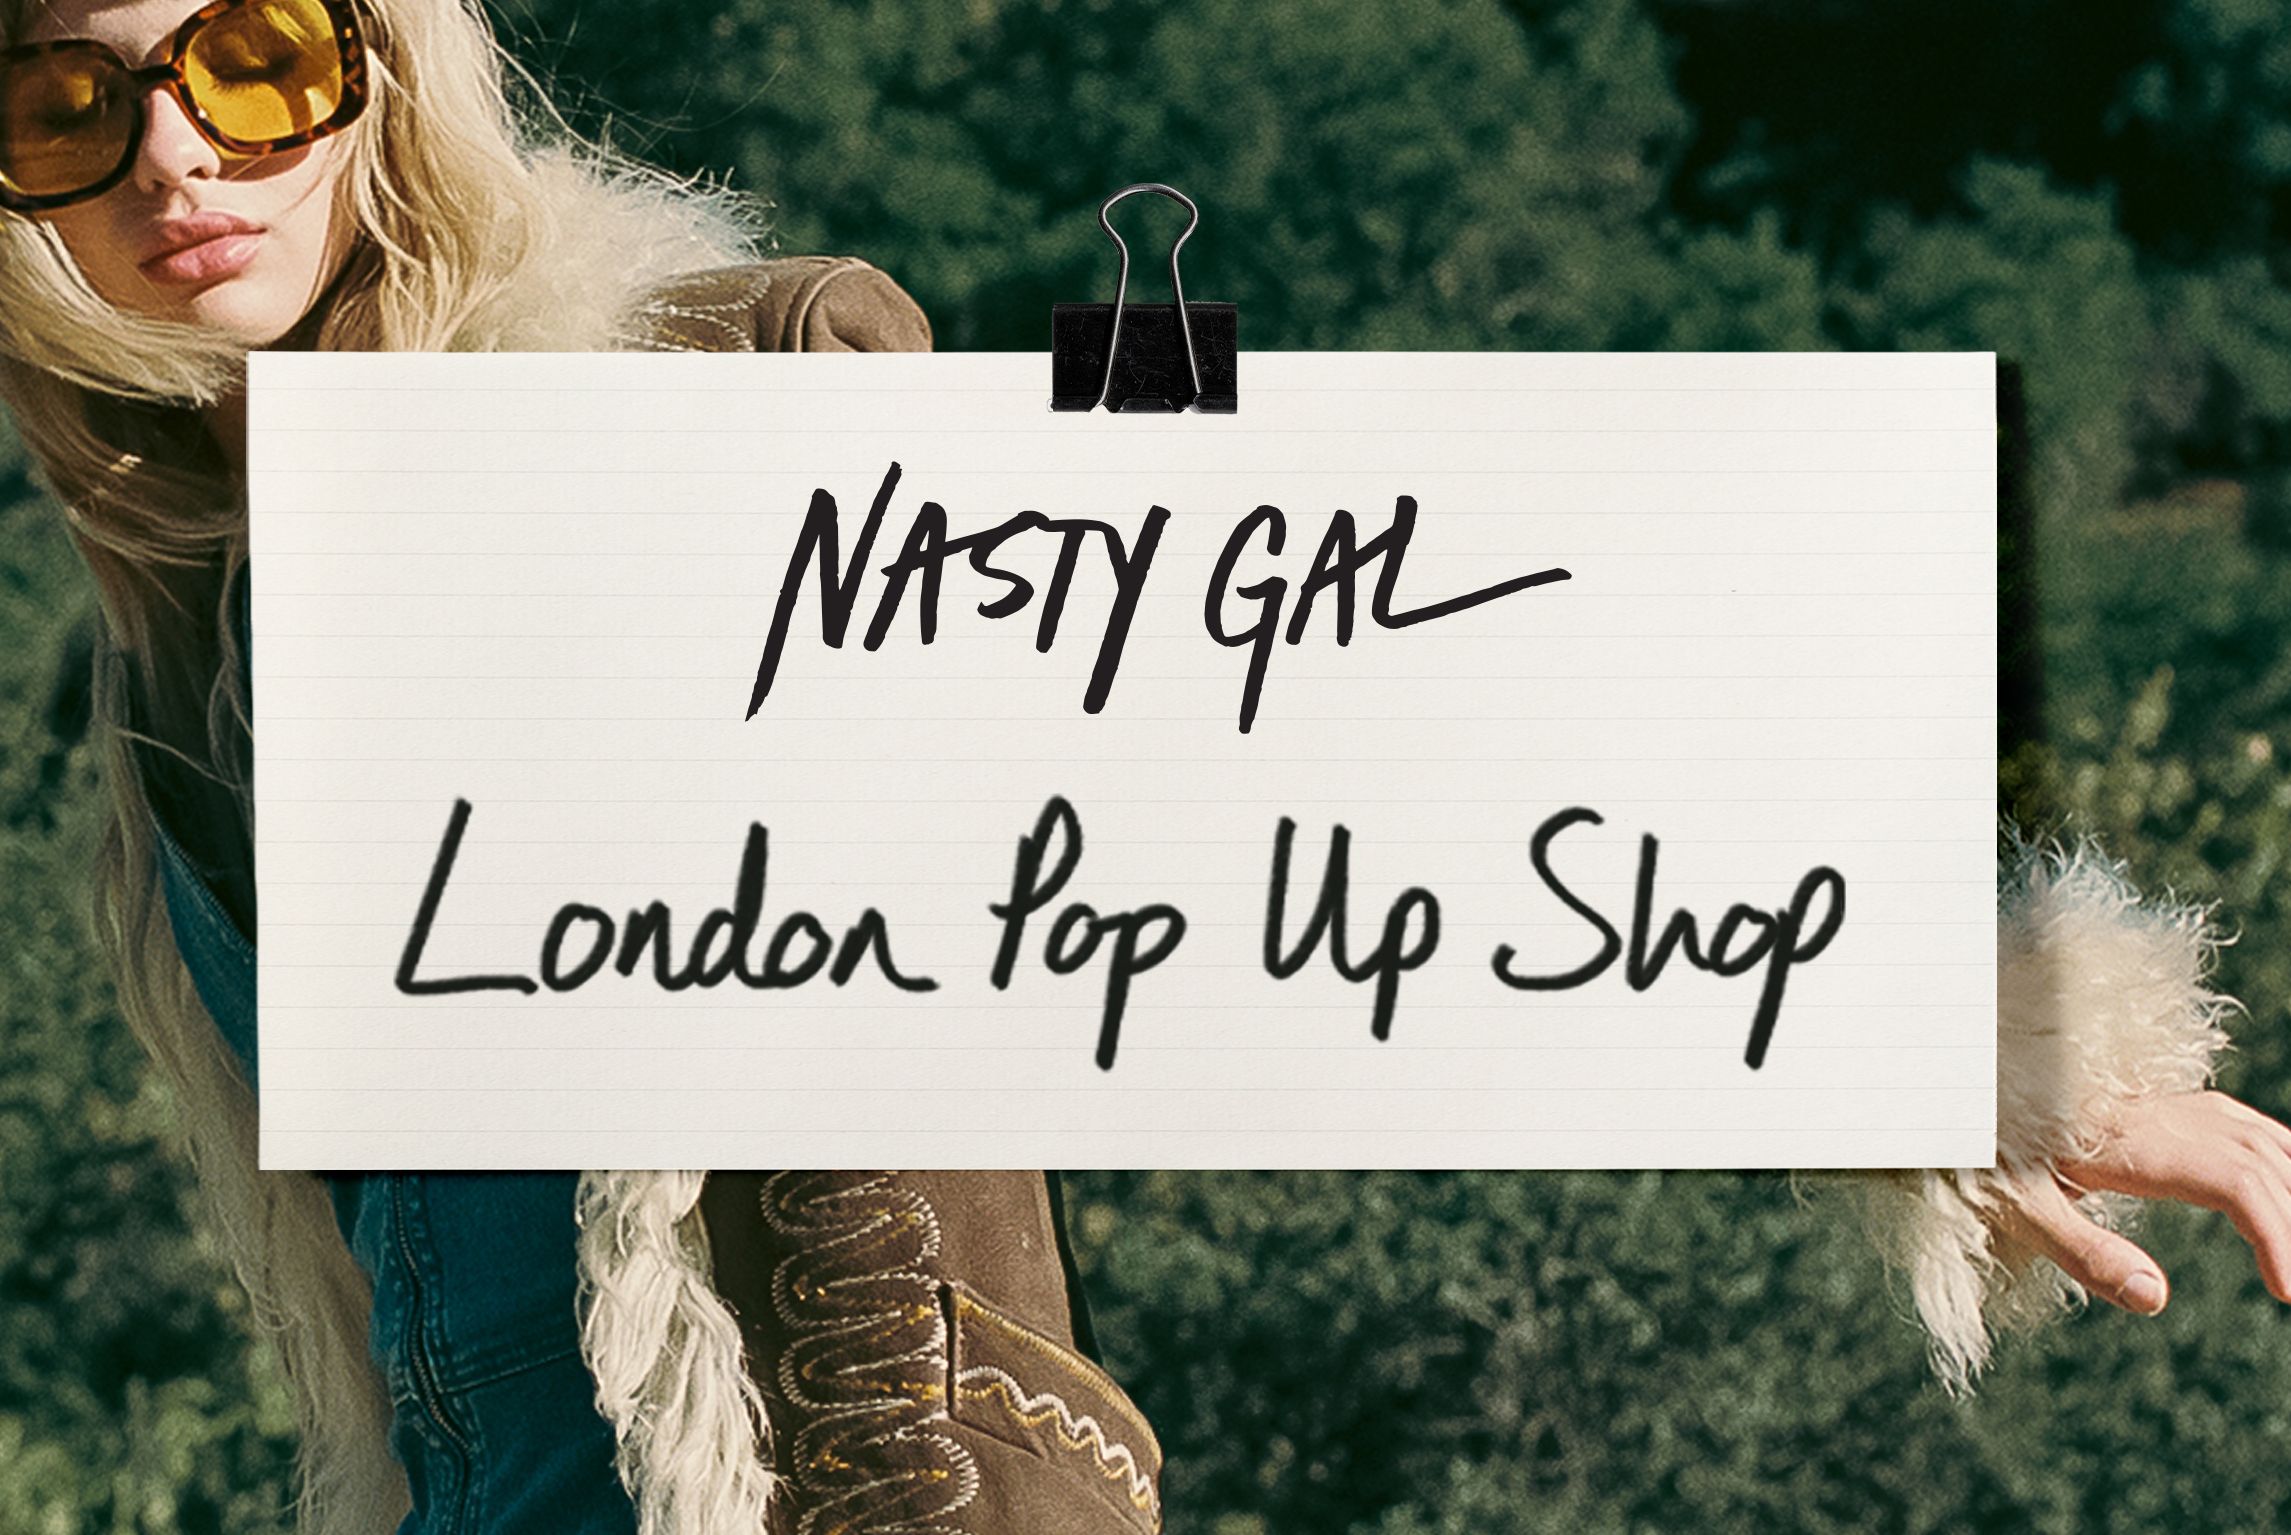 London Pop Up Shop